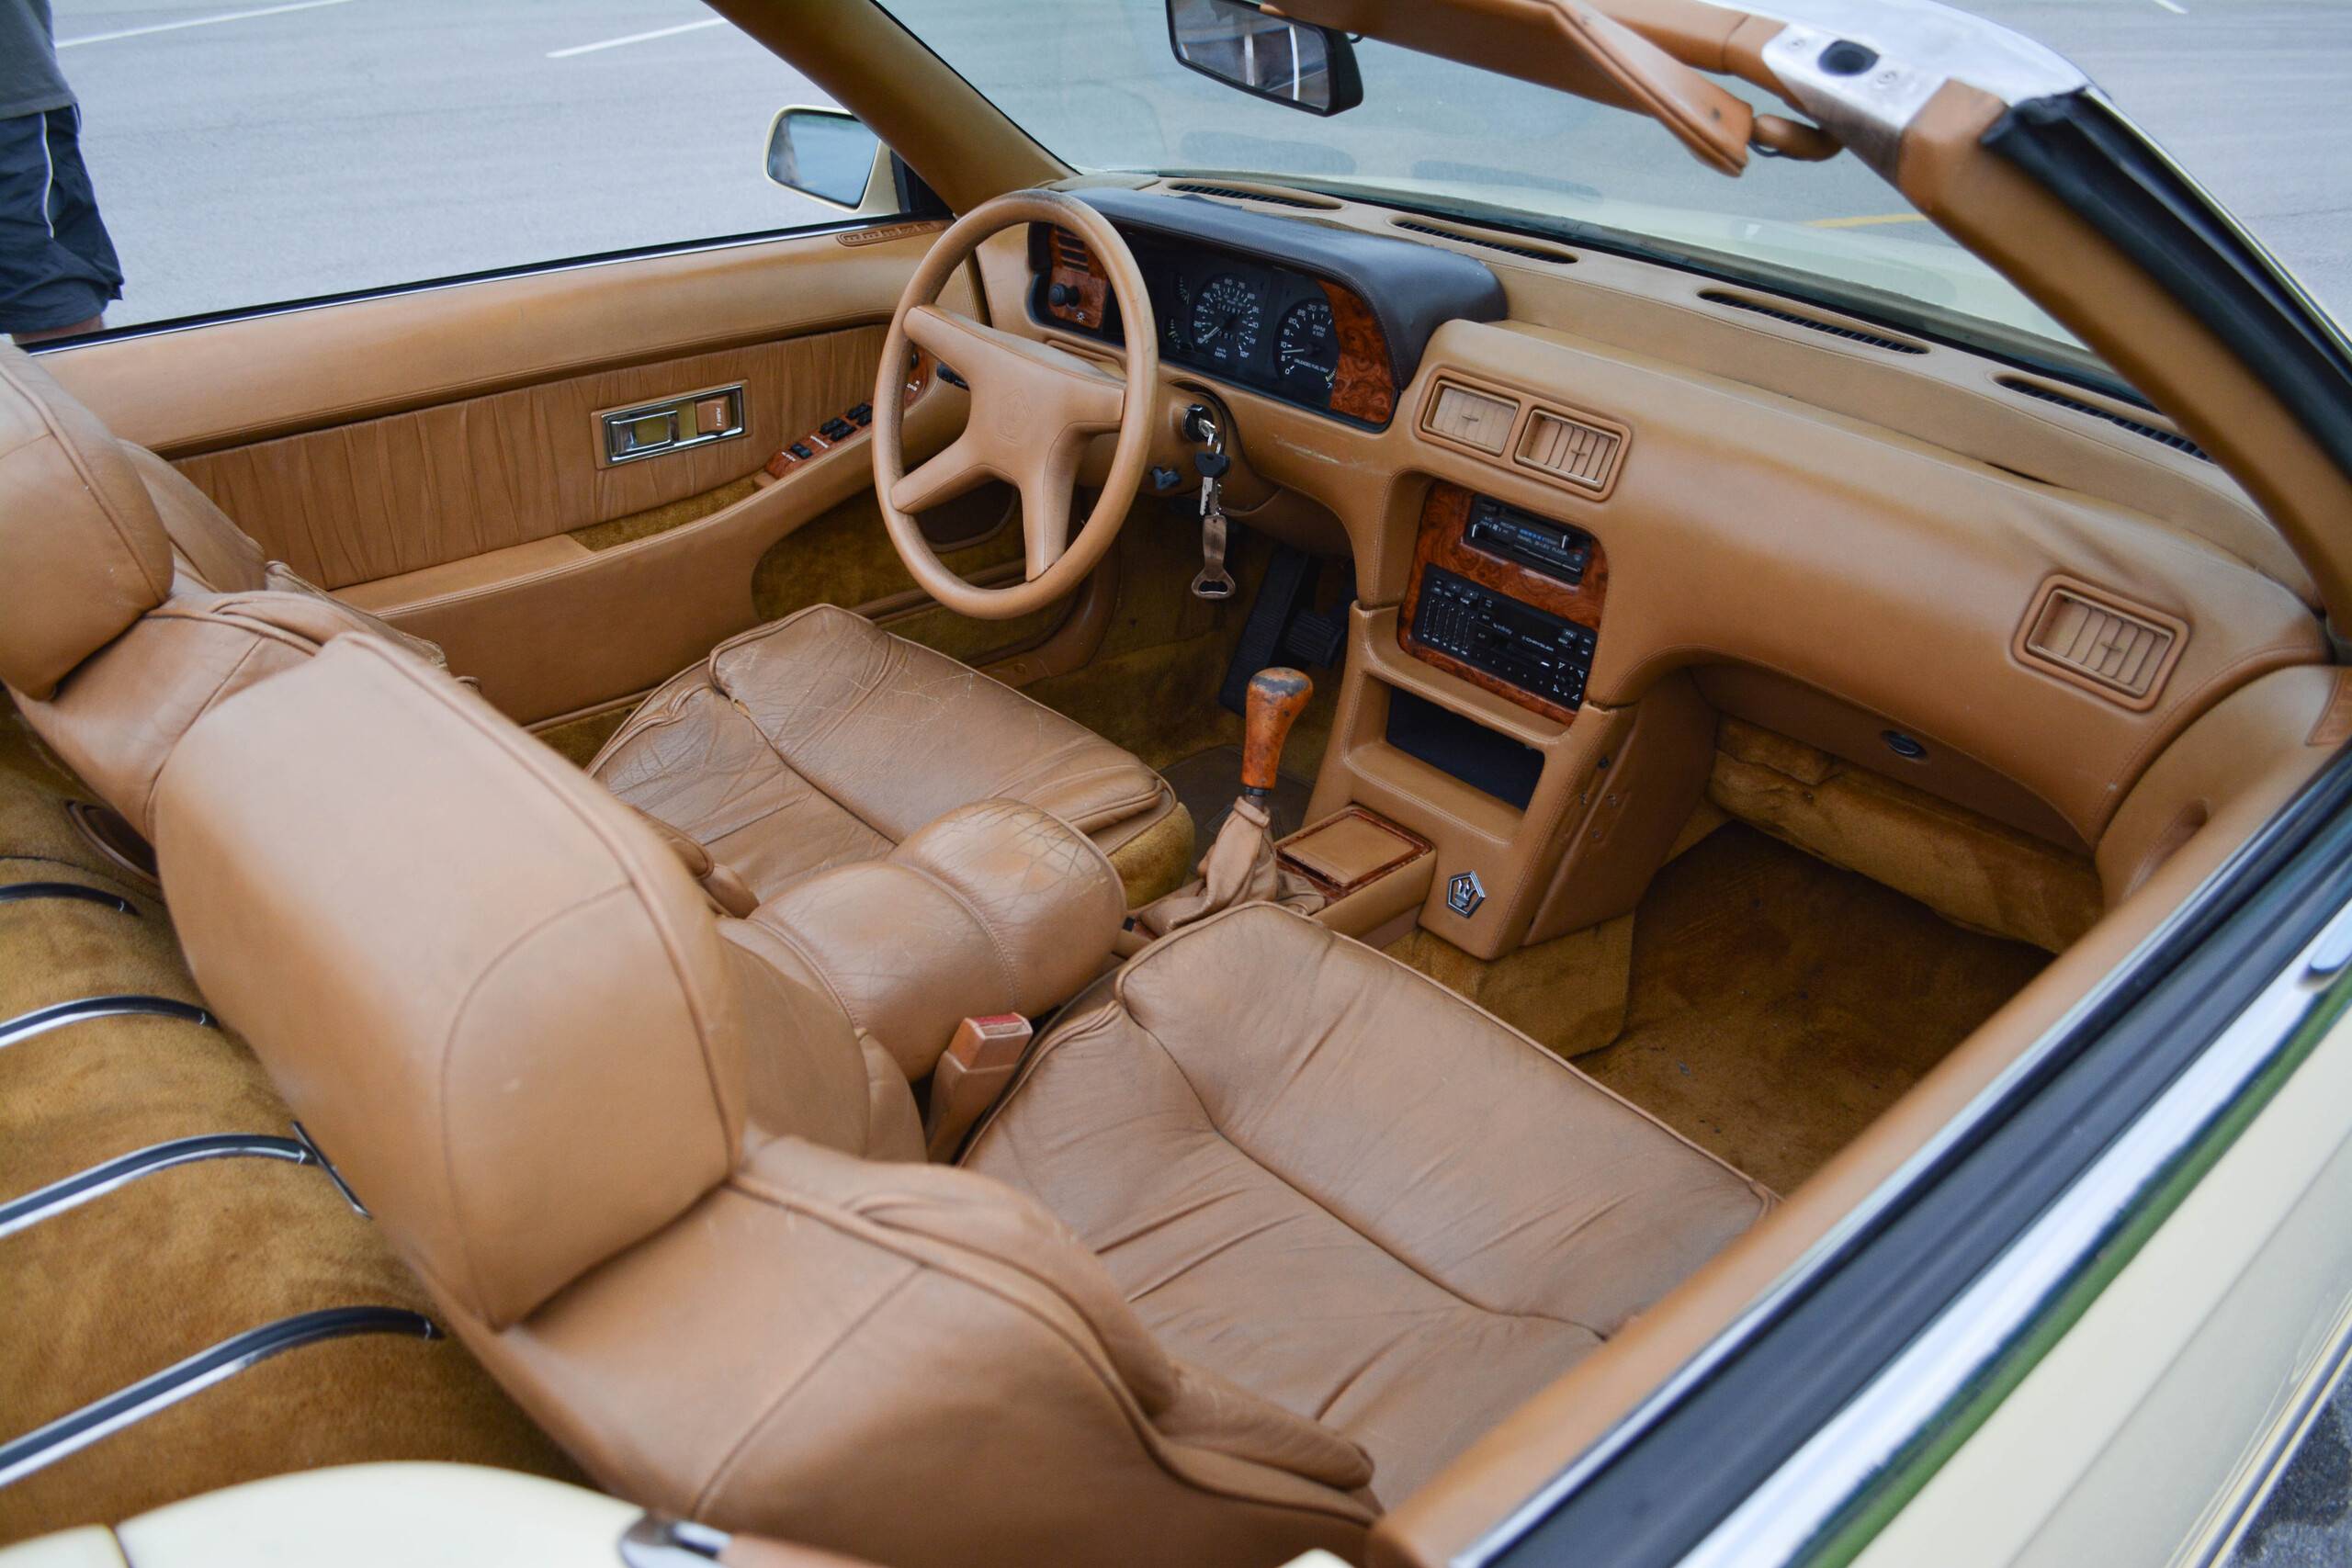 1989 Chrysler 16V DOHC 37